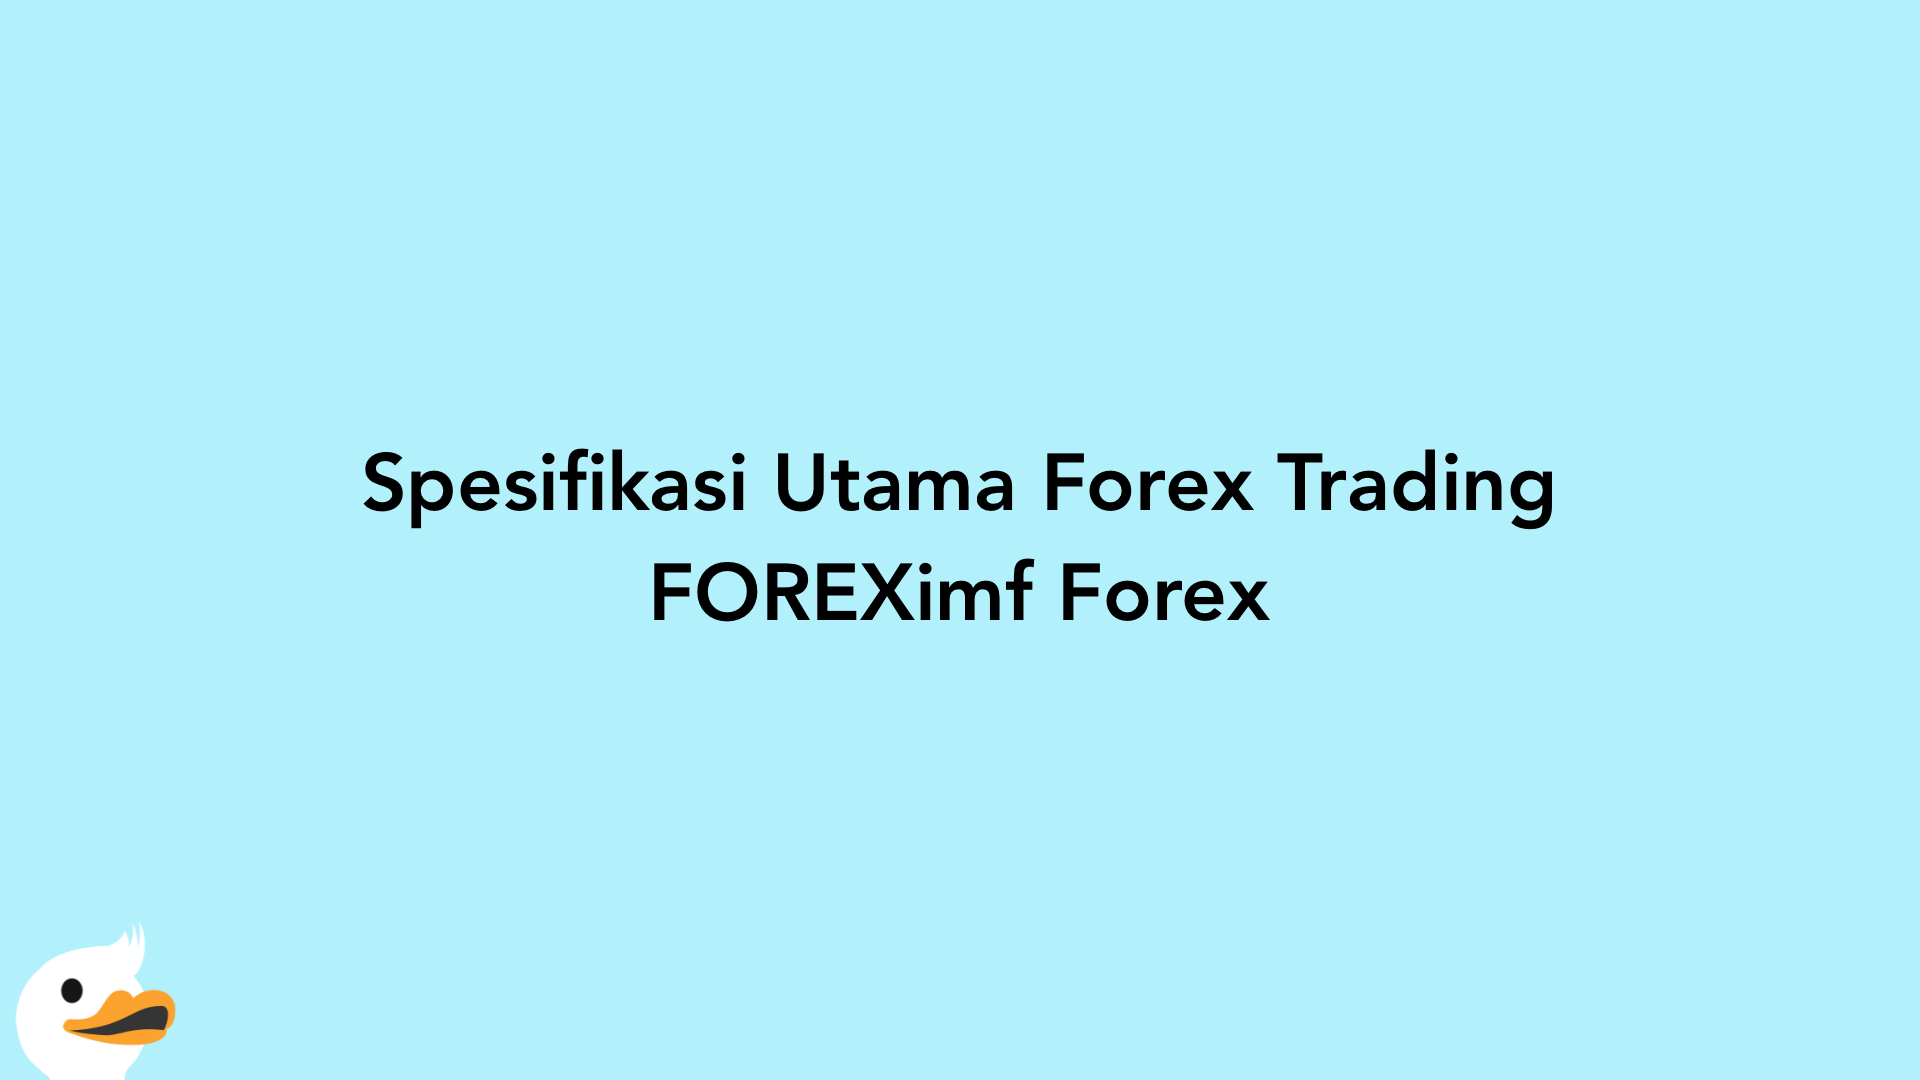 Spesifikasi Utama Forex Trading FOREXimf Forex